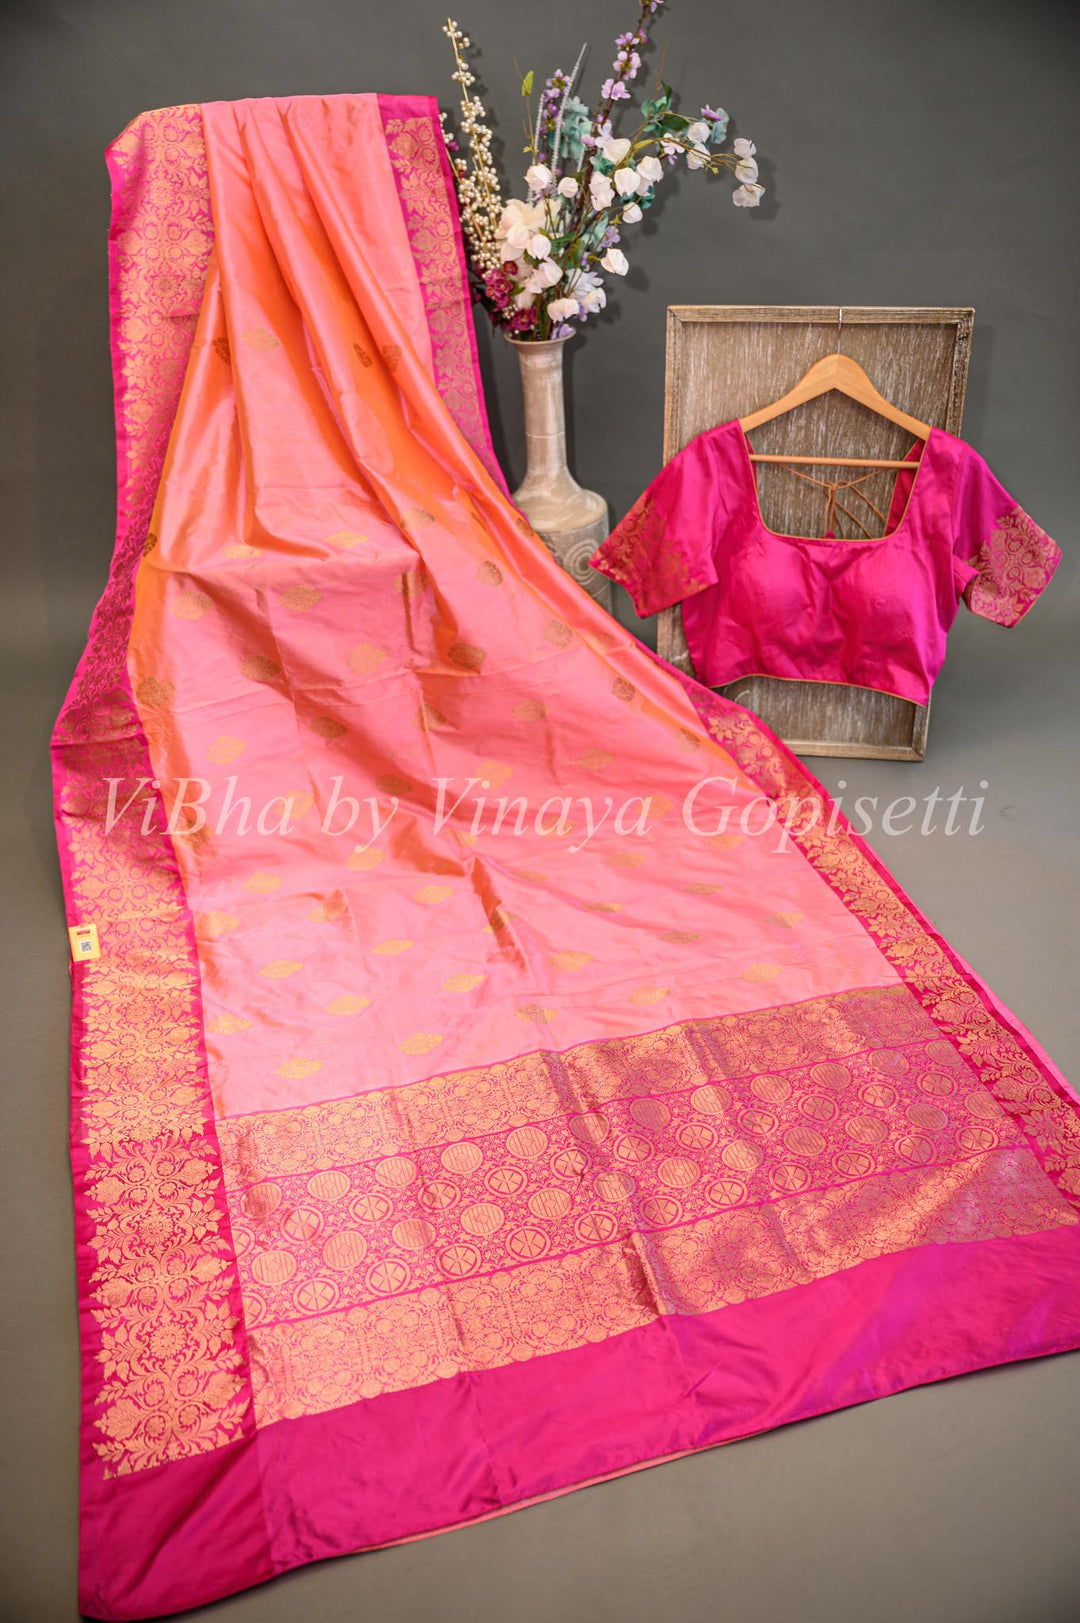 Dark and Light Pink Benares Katan Silk Saree